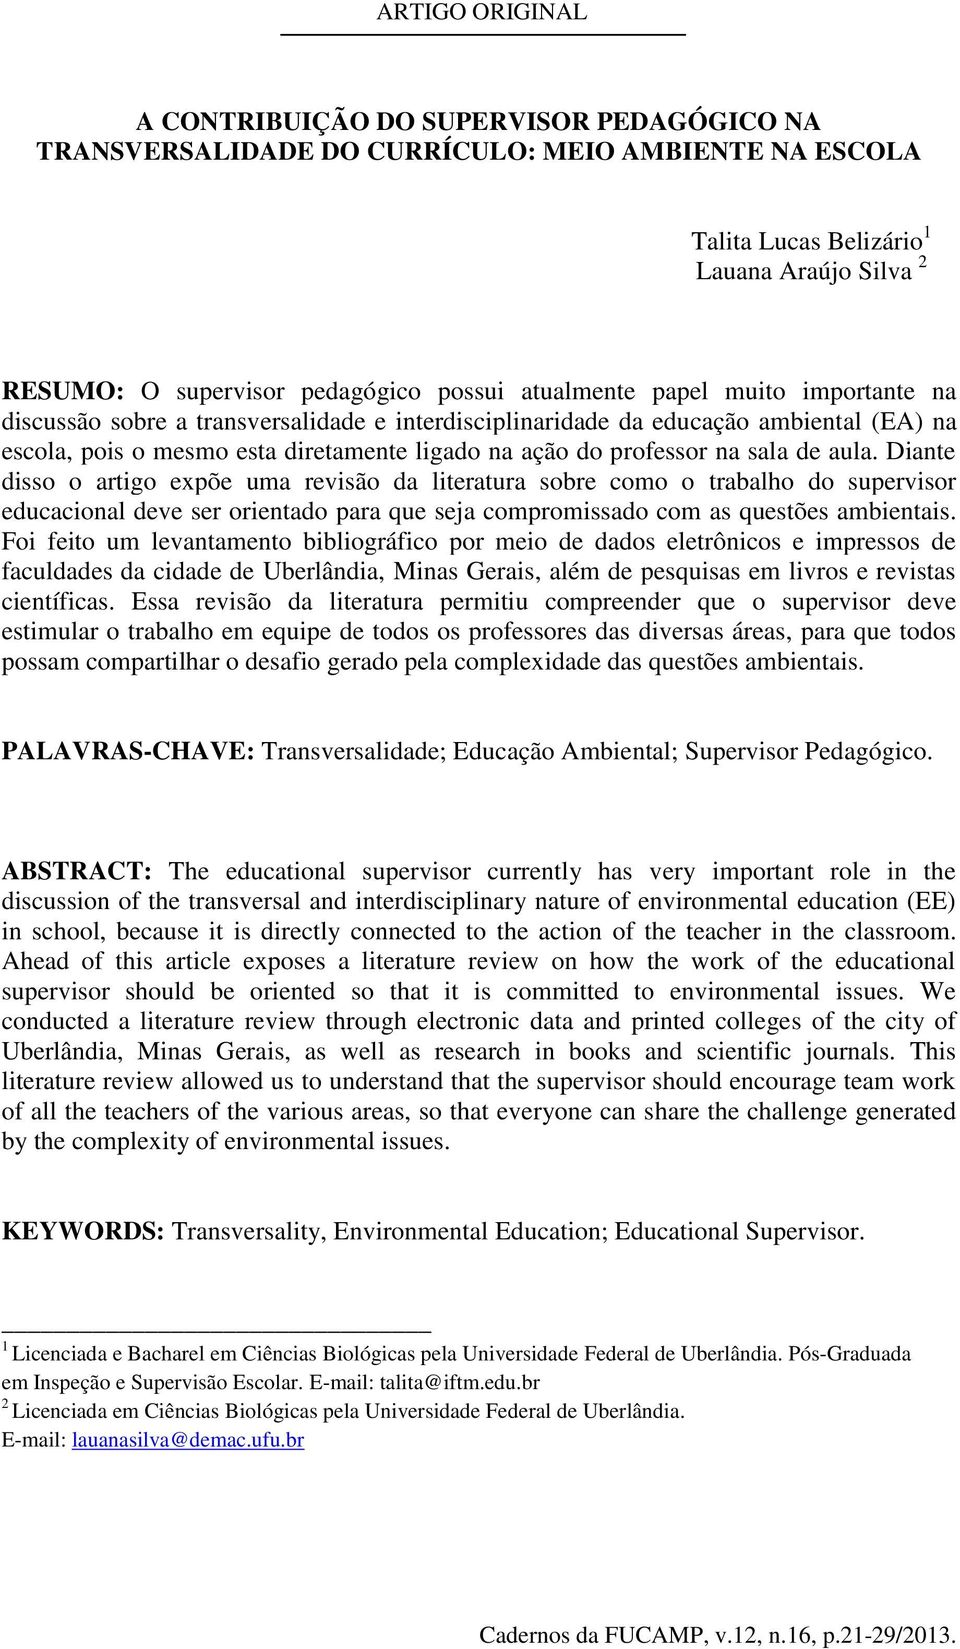 de aula. Diante disso o artigo expõe uma revisão da literatura sobre como o trabalho do supervisor educacional deve ser orientado para que seja compromissado com as questões ambientais.